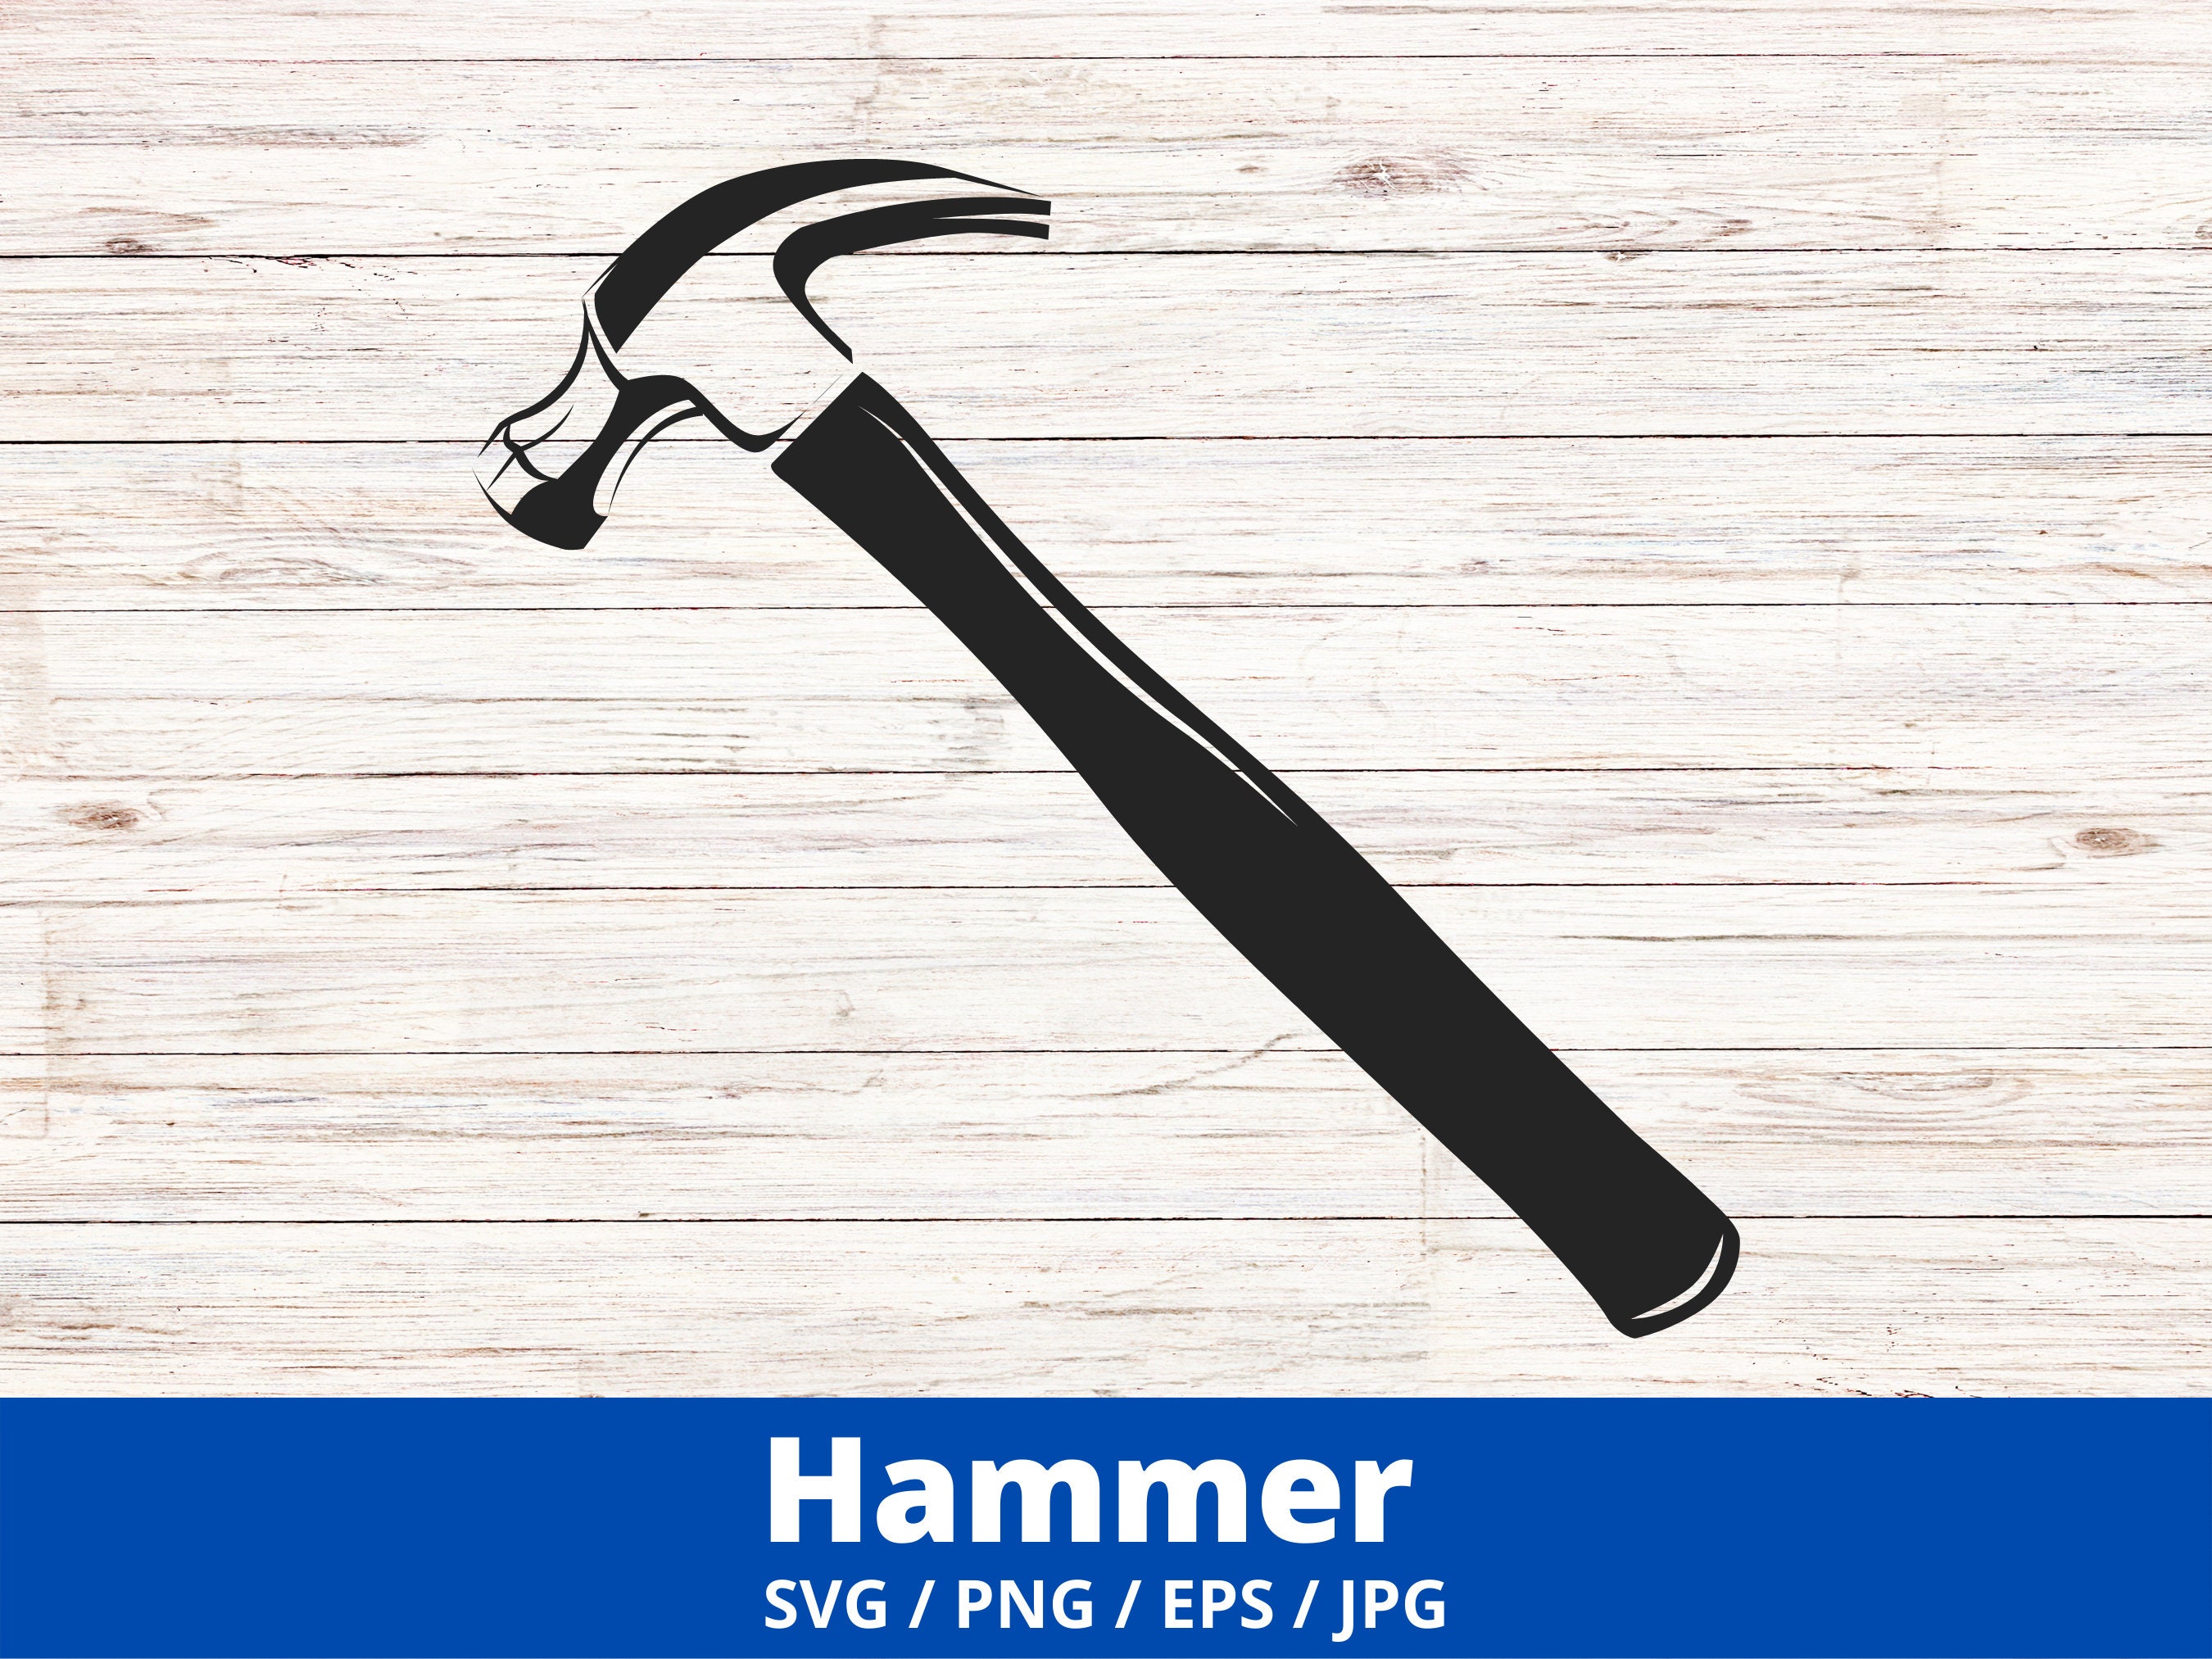 Hammer Vector File 